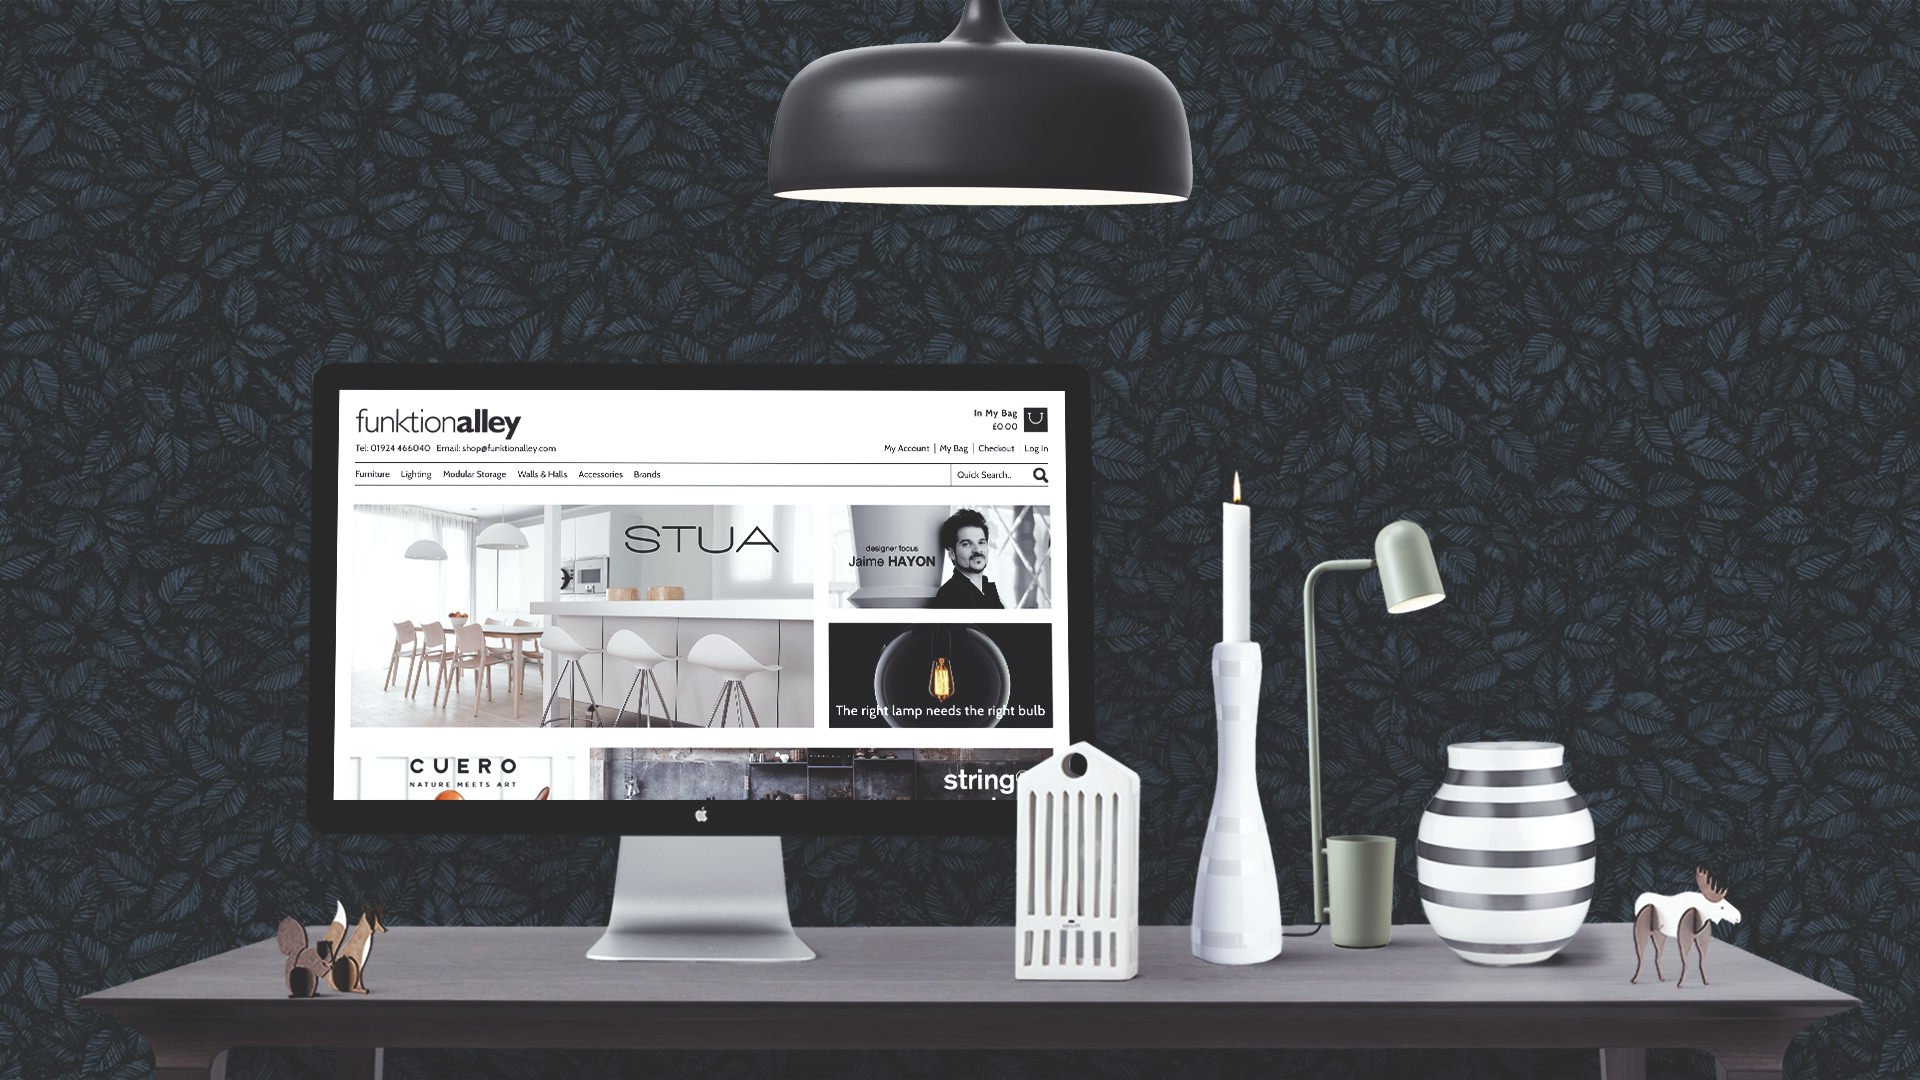 Funktionalley ecommerce website design